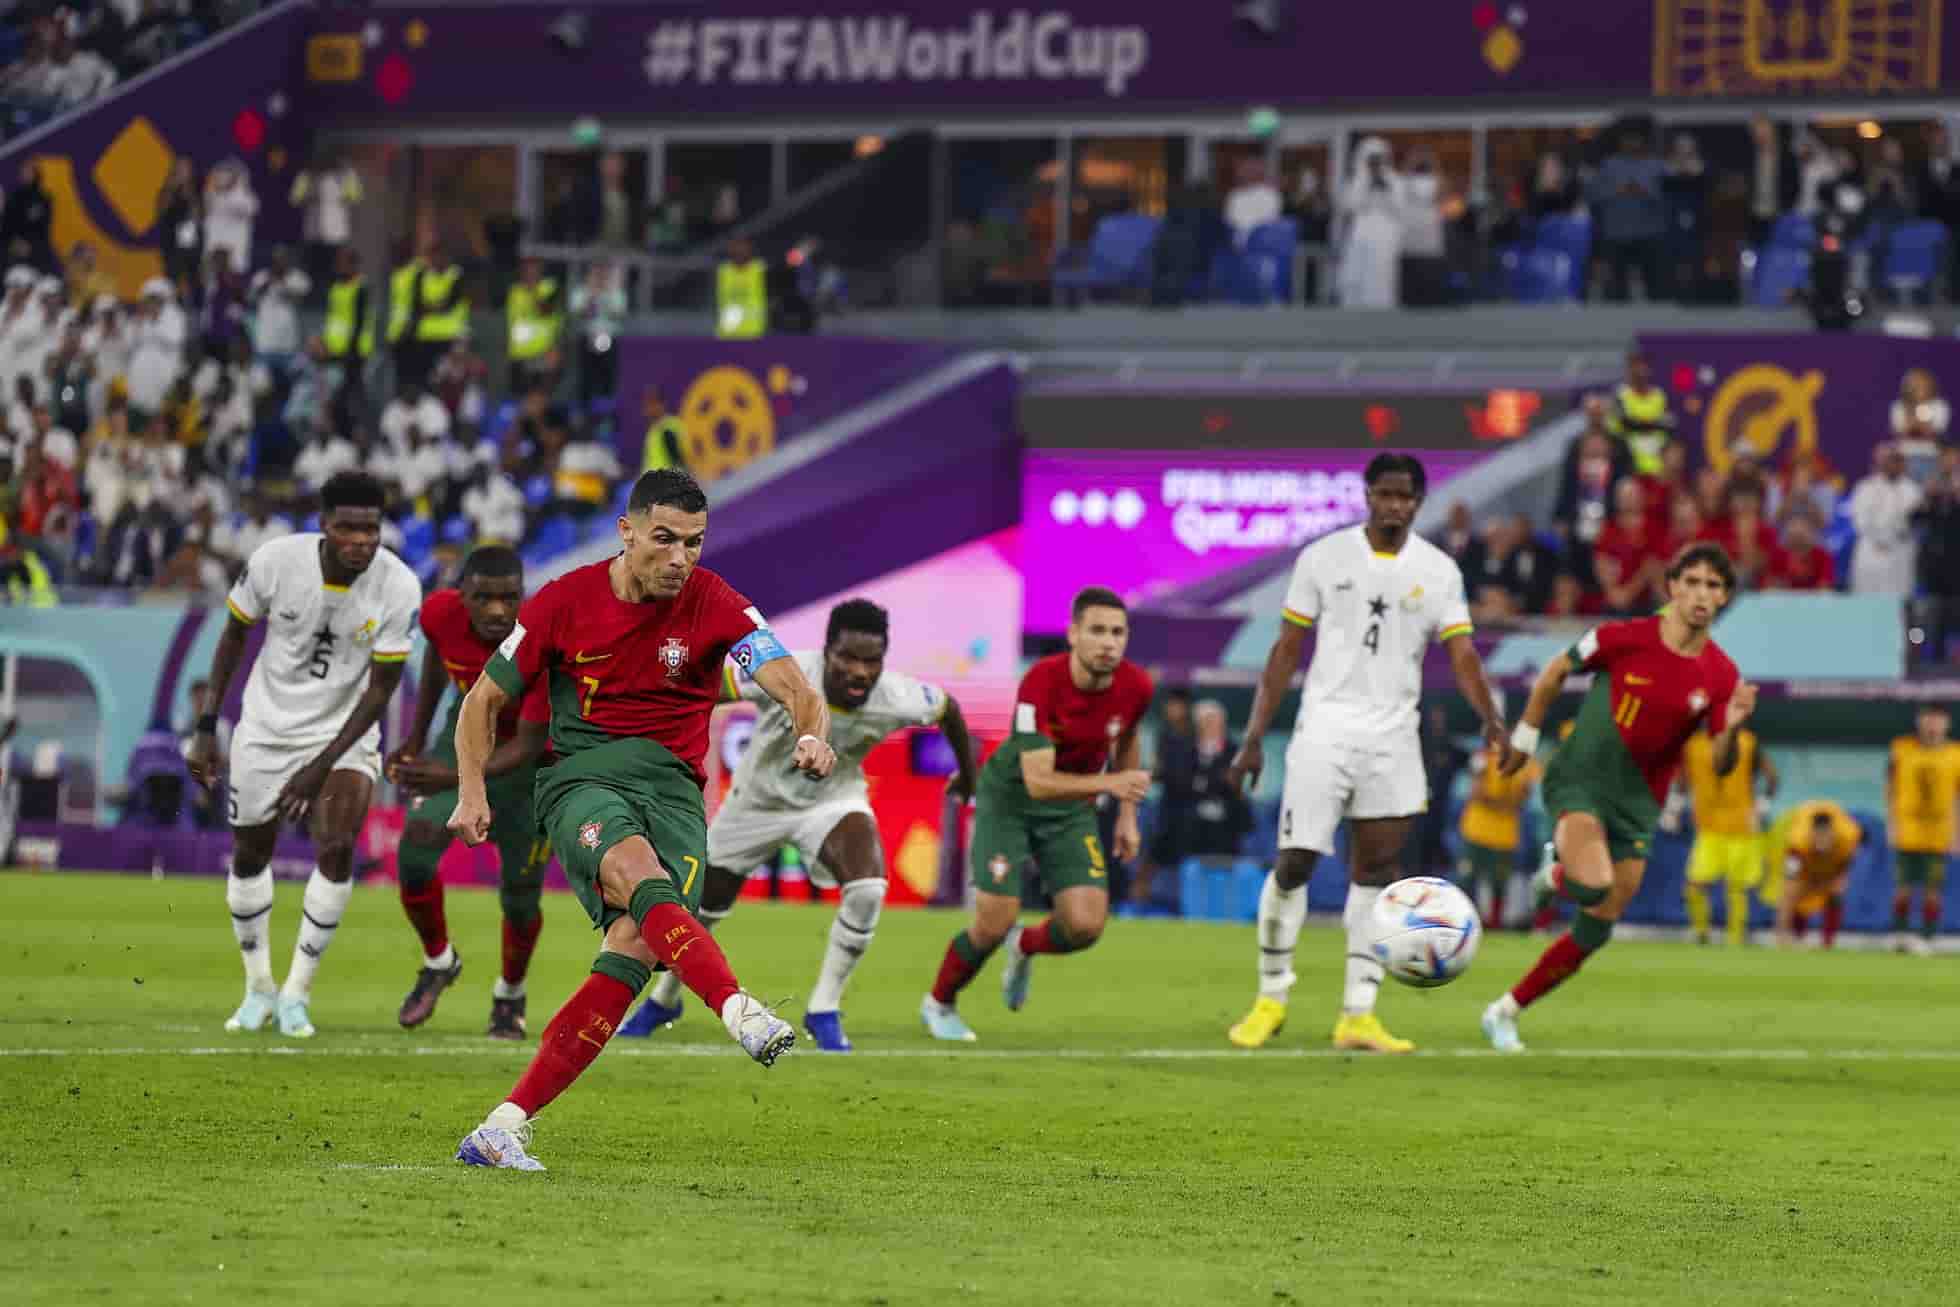 QATAR 2022 | La selección portuguesa derrota a Ghana en su debú mundialista con goles de Cristiano, João y Leao